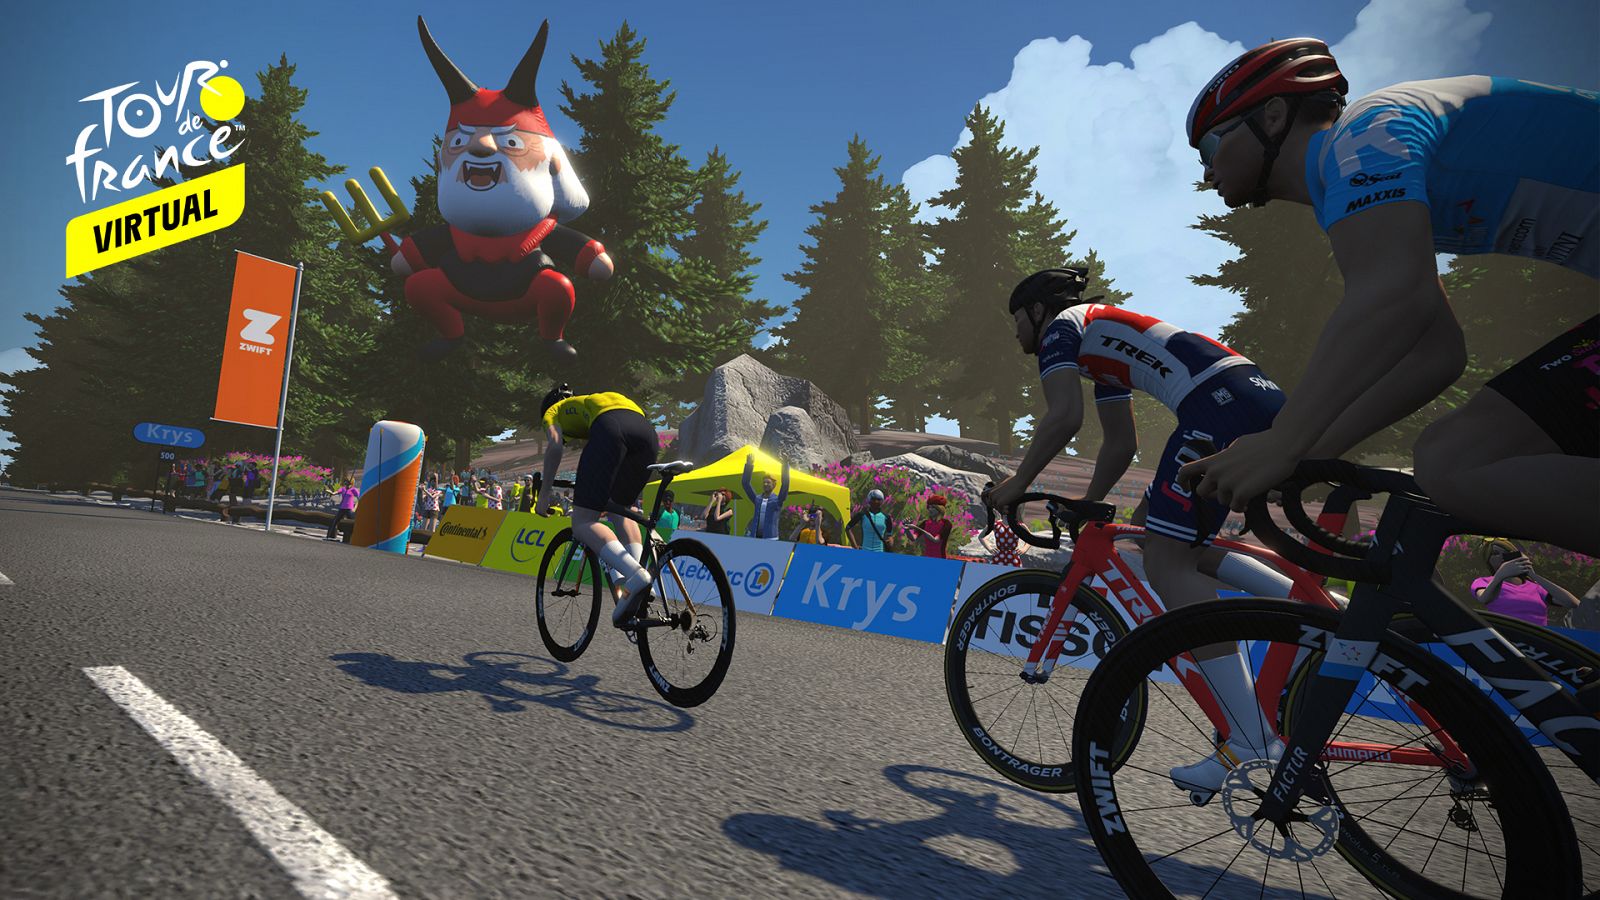 El Tour de Francia virtual, en directo en +tdp